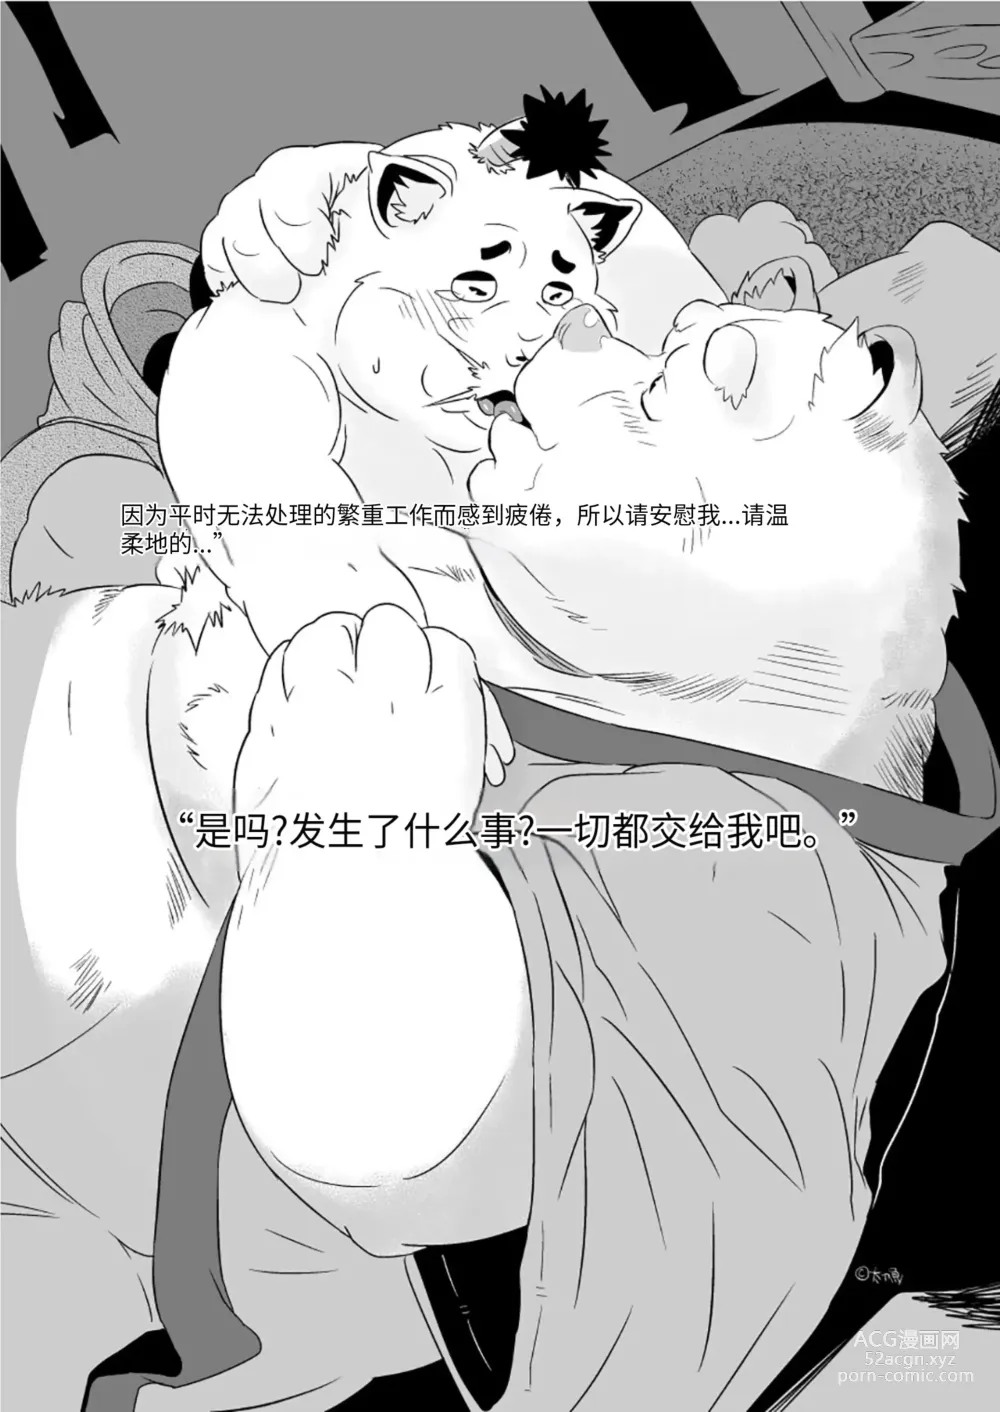 Page 16 of doujinshi 狗津原细见